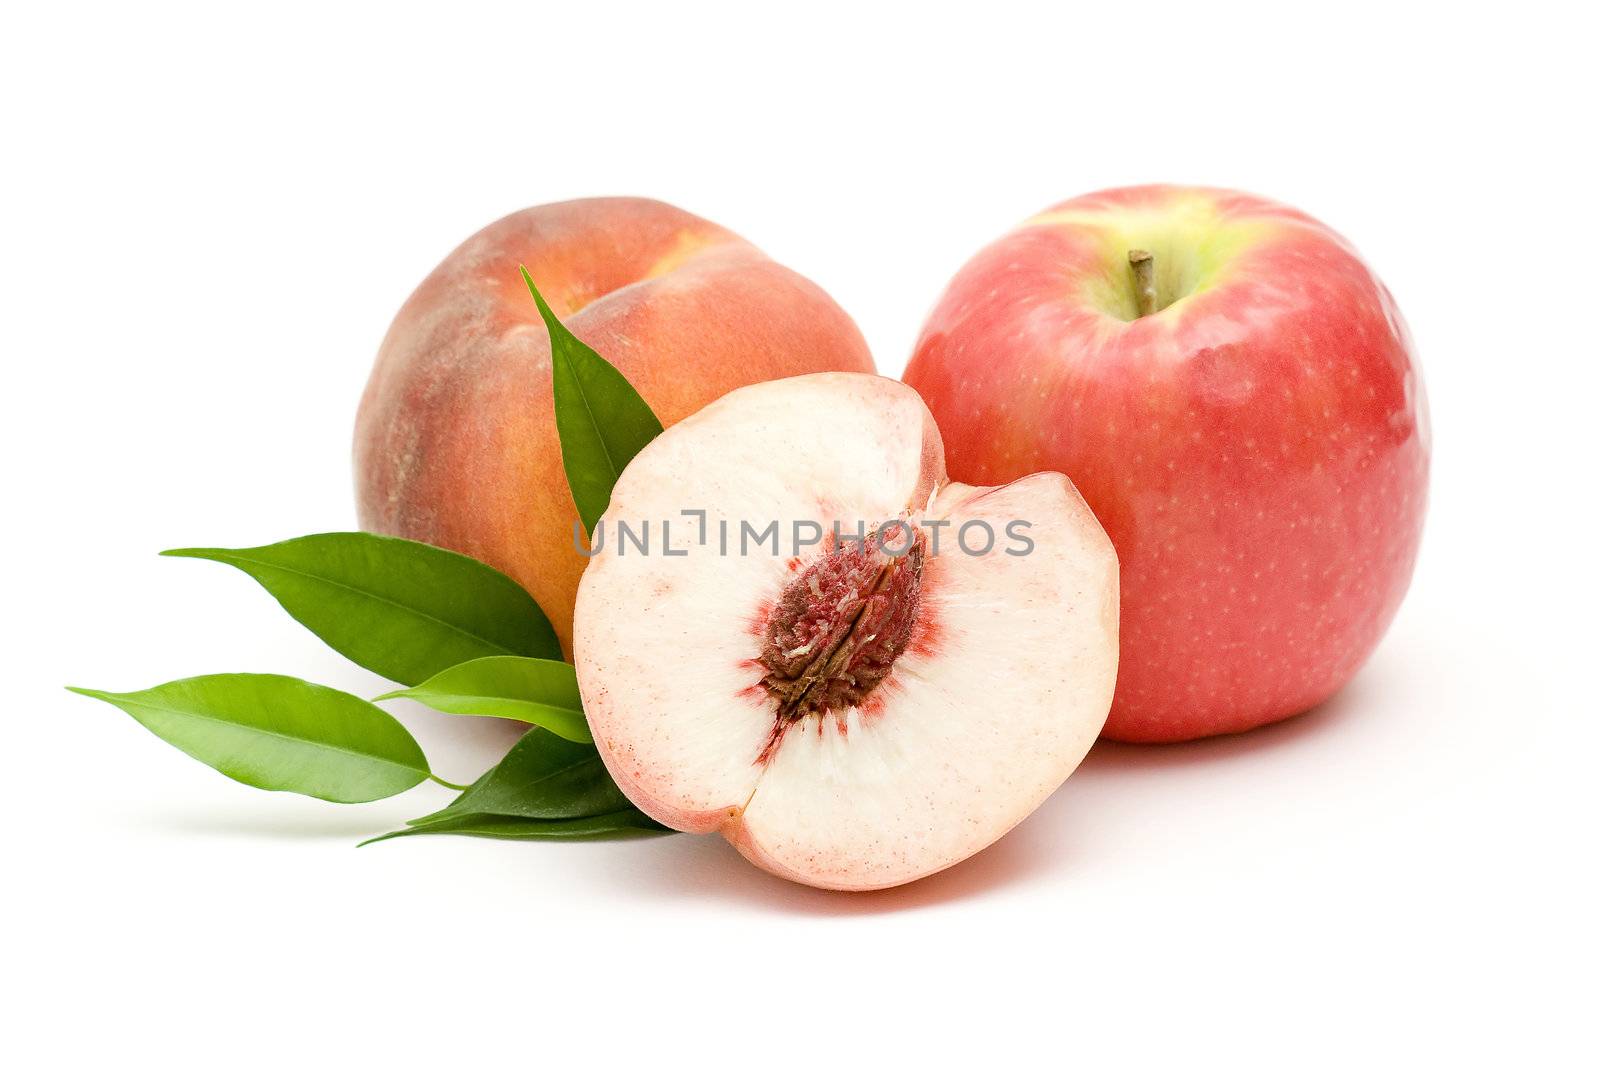 peach and apple by miradrozdowski